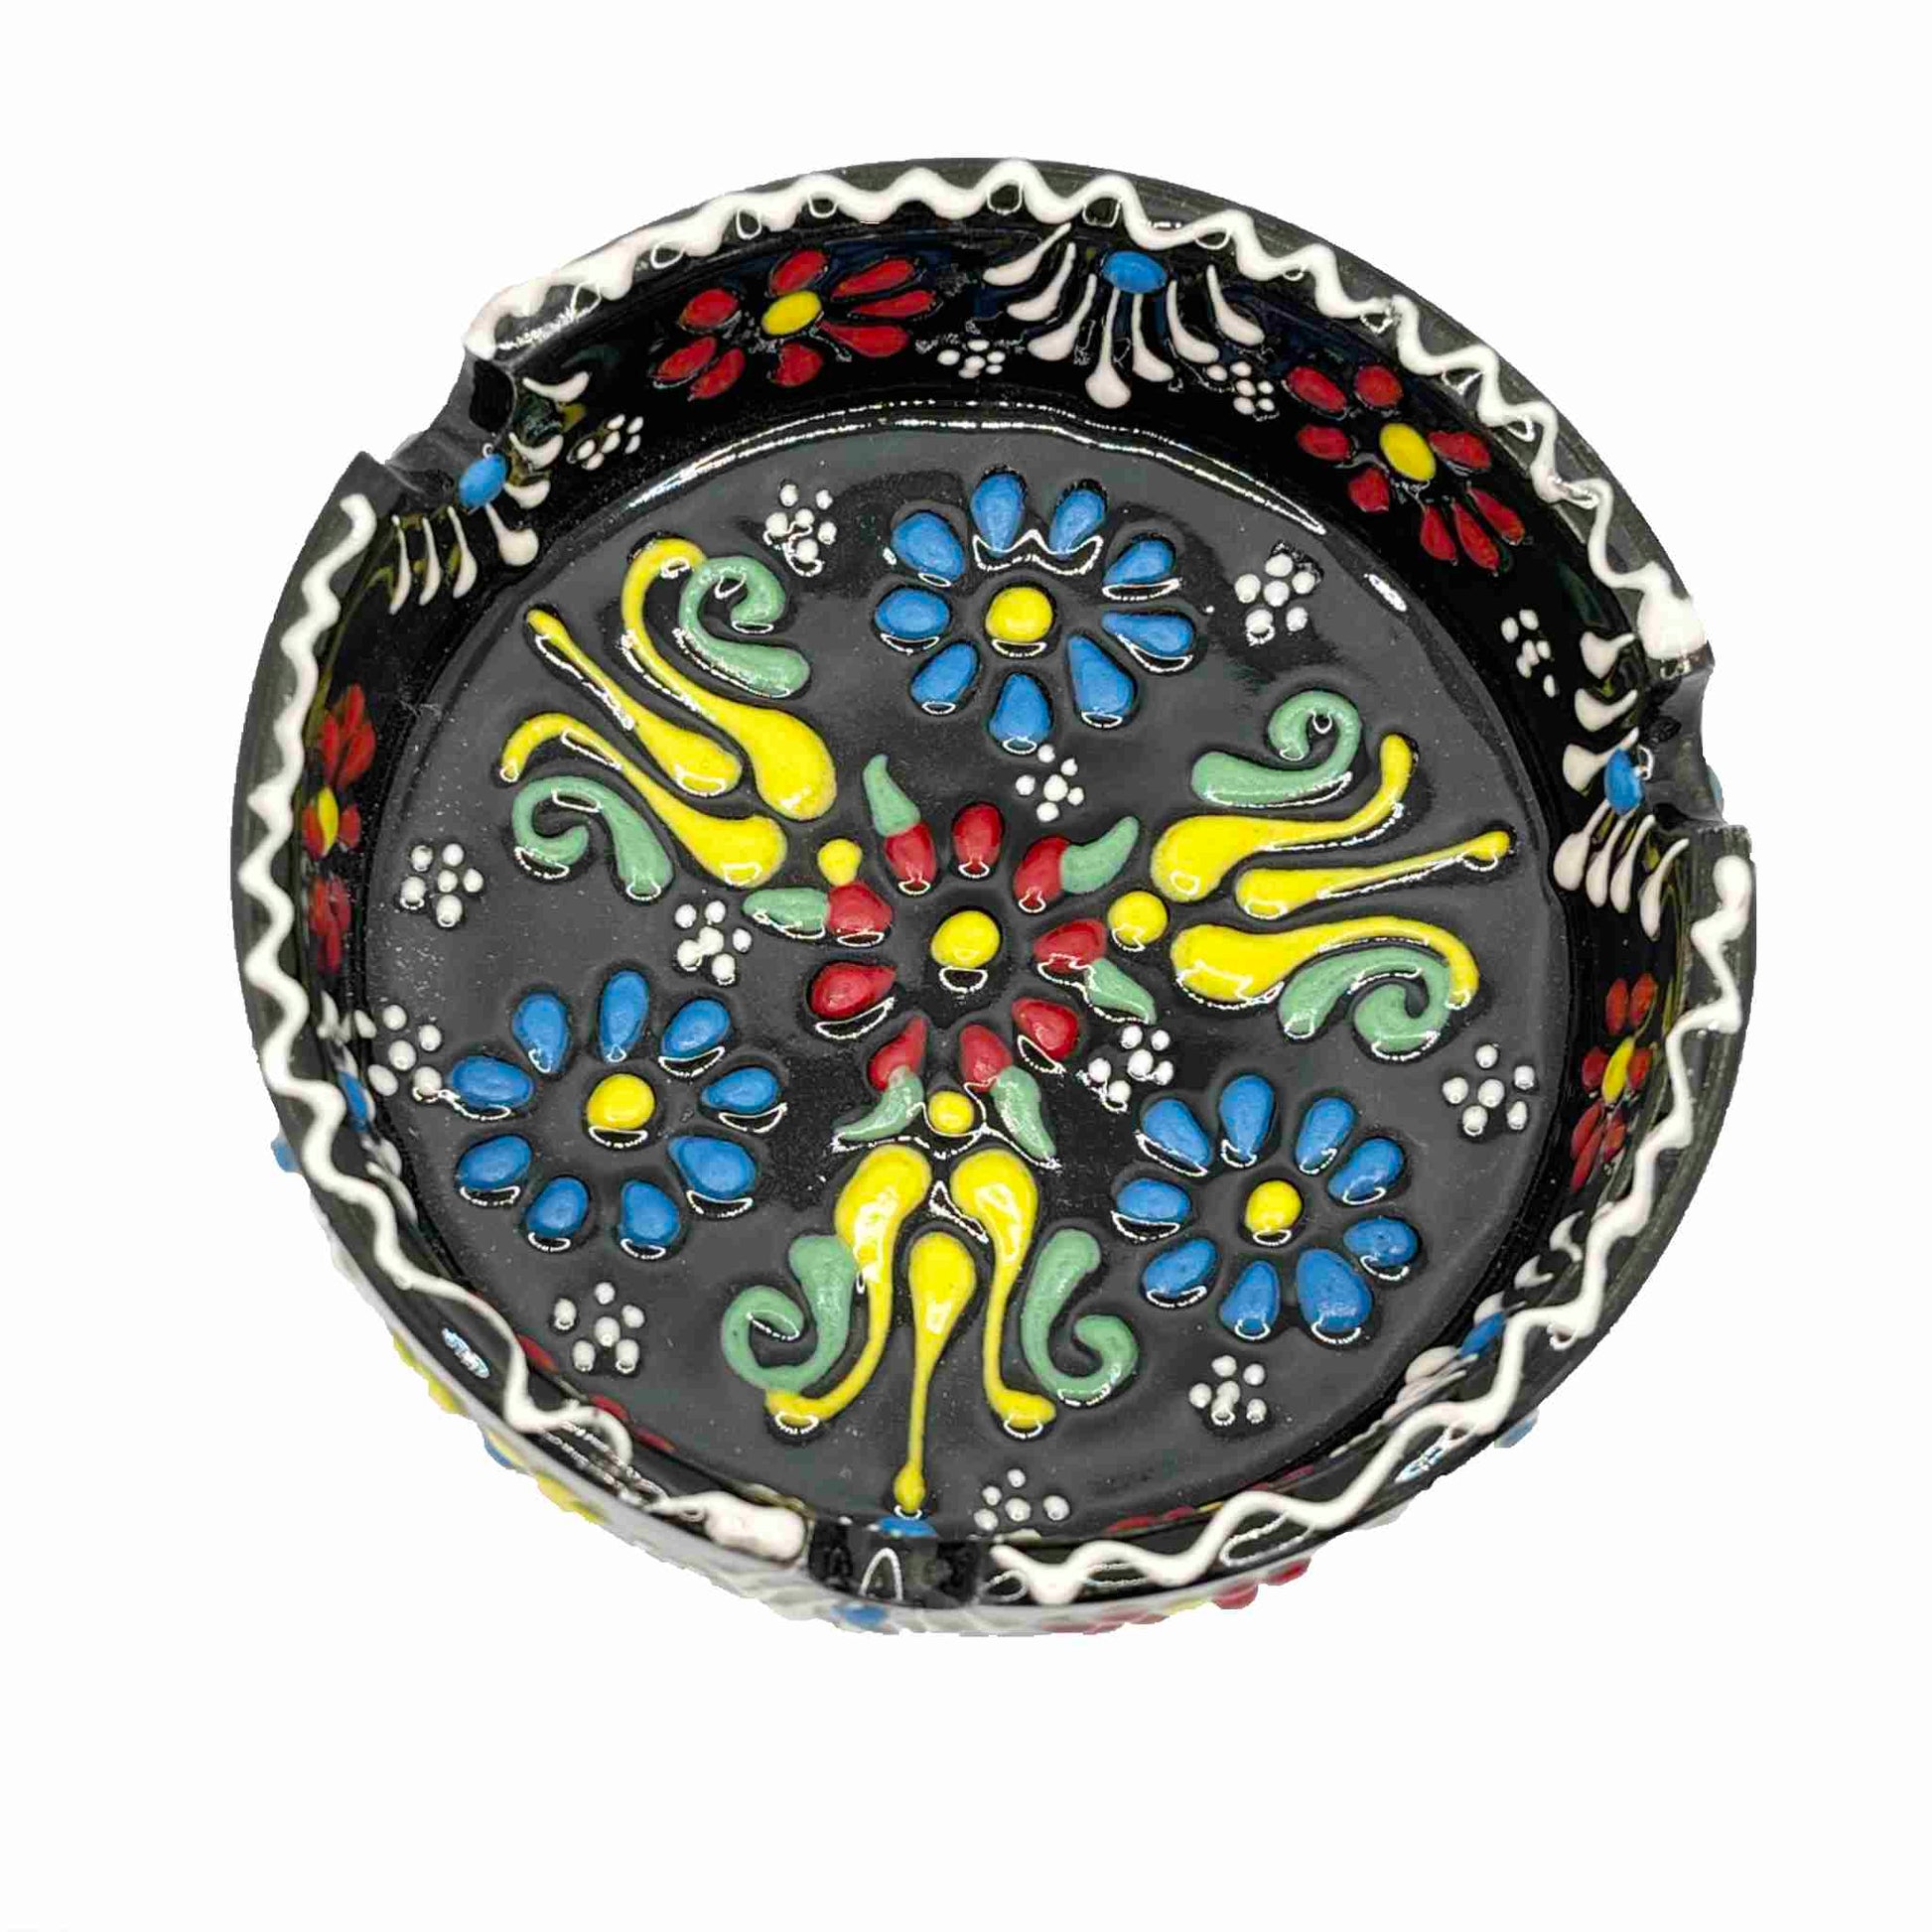 Cenicero de cerámica turca, artesanal, grande Lace marron